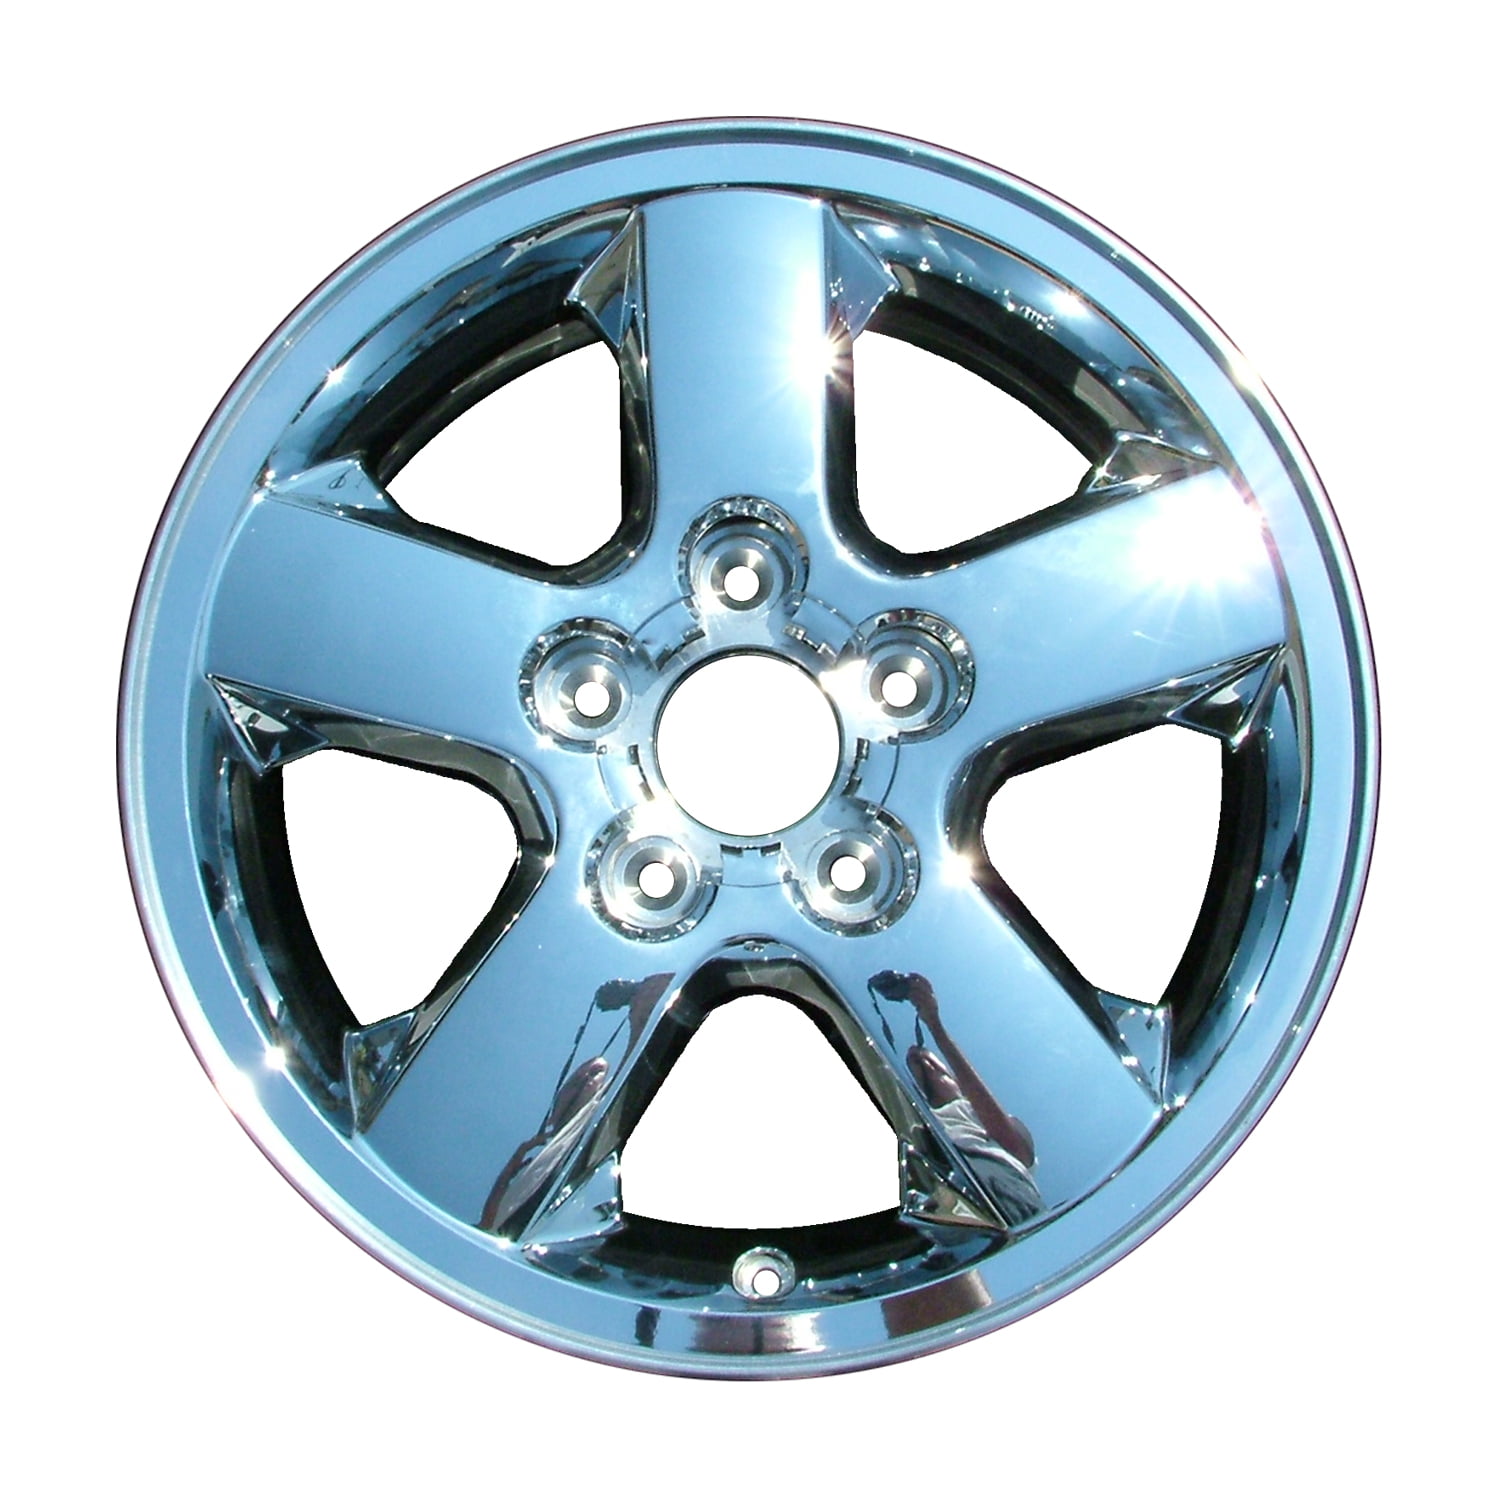 New 17x7.5 Aluminum Alloy Wheel, Rim Chrome Cladded Face - 9042 ...